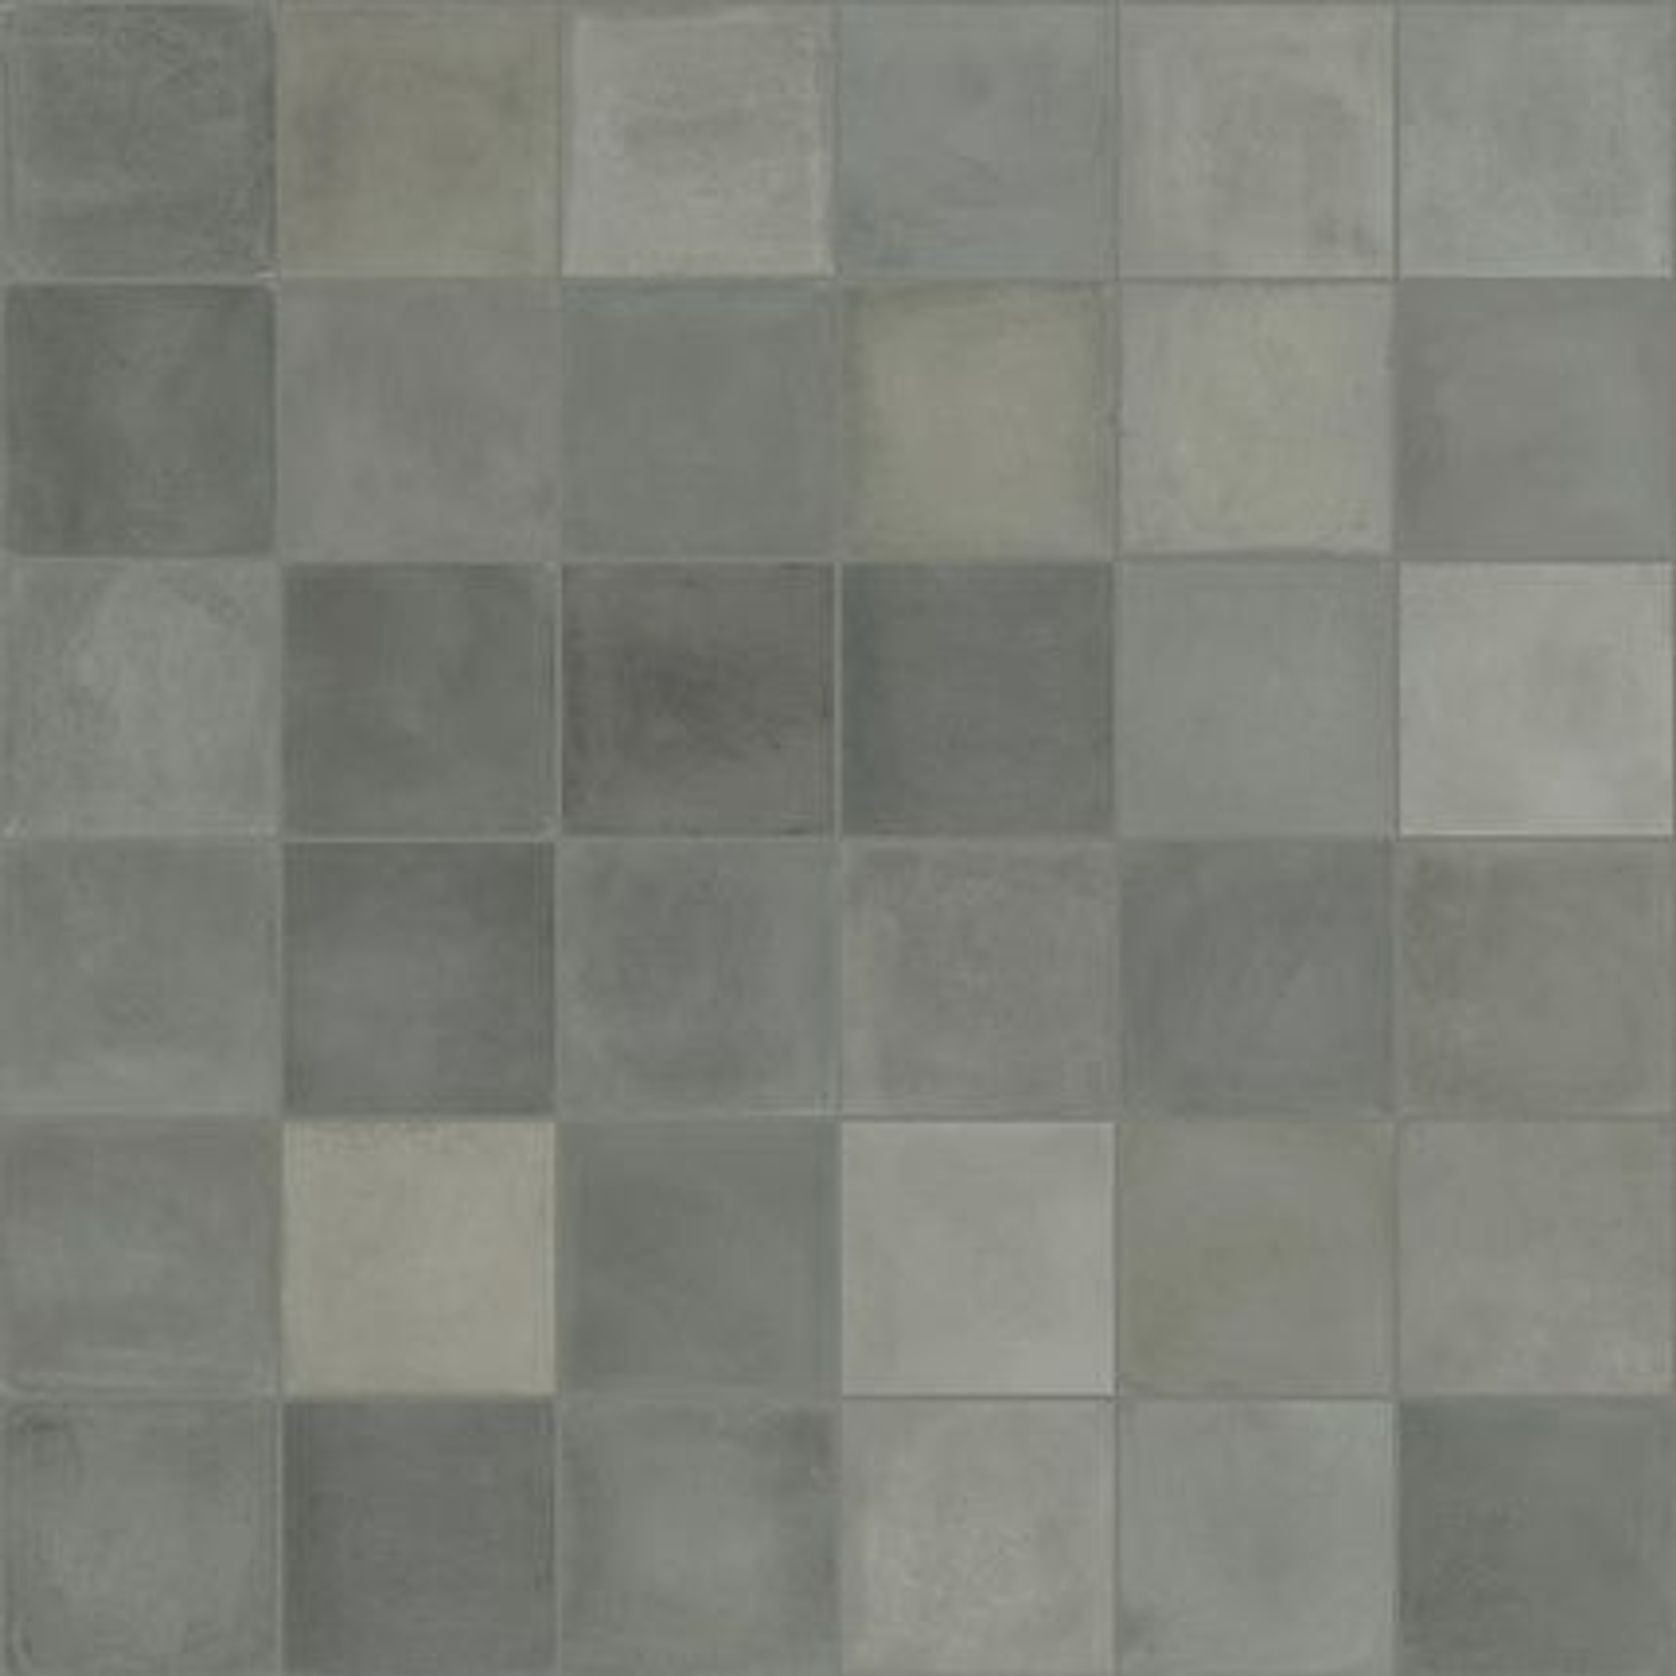 D Segni Blend Tile Series gallery detail image